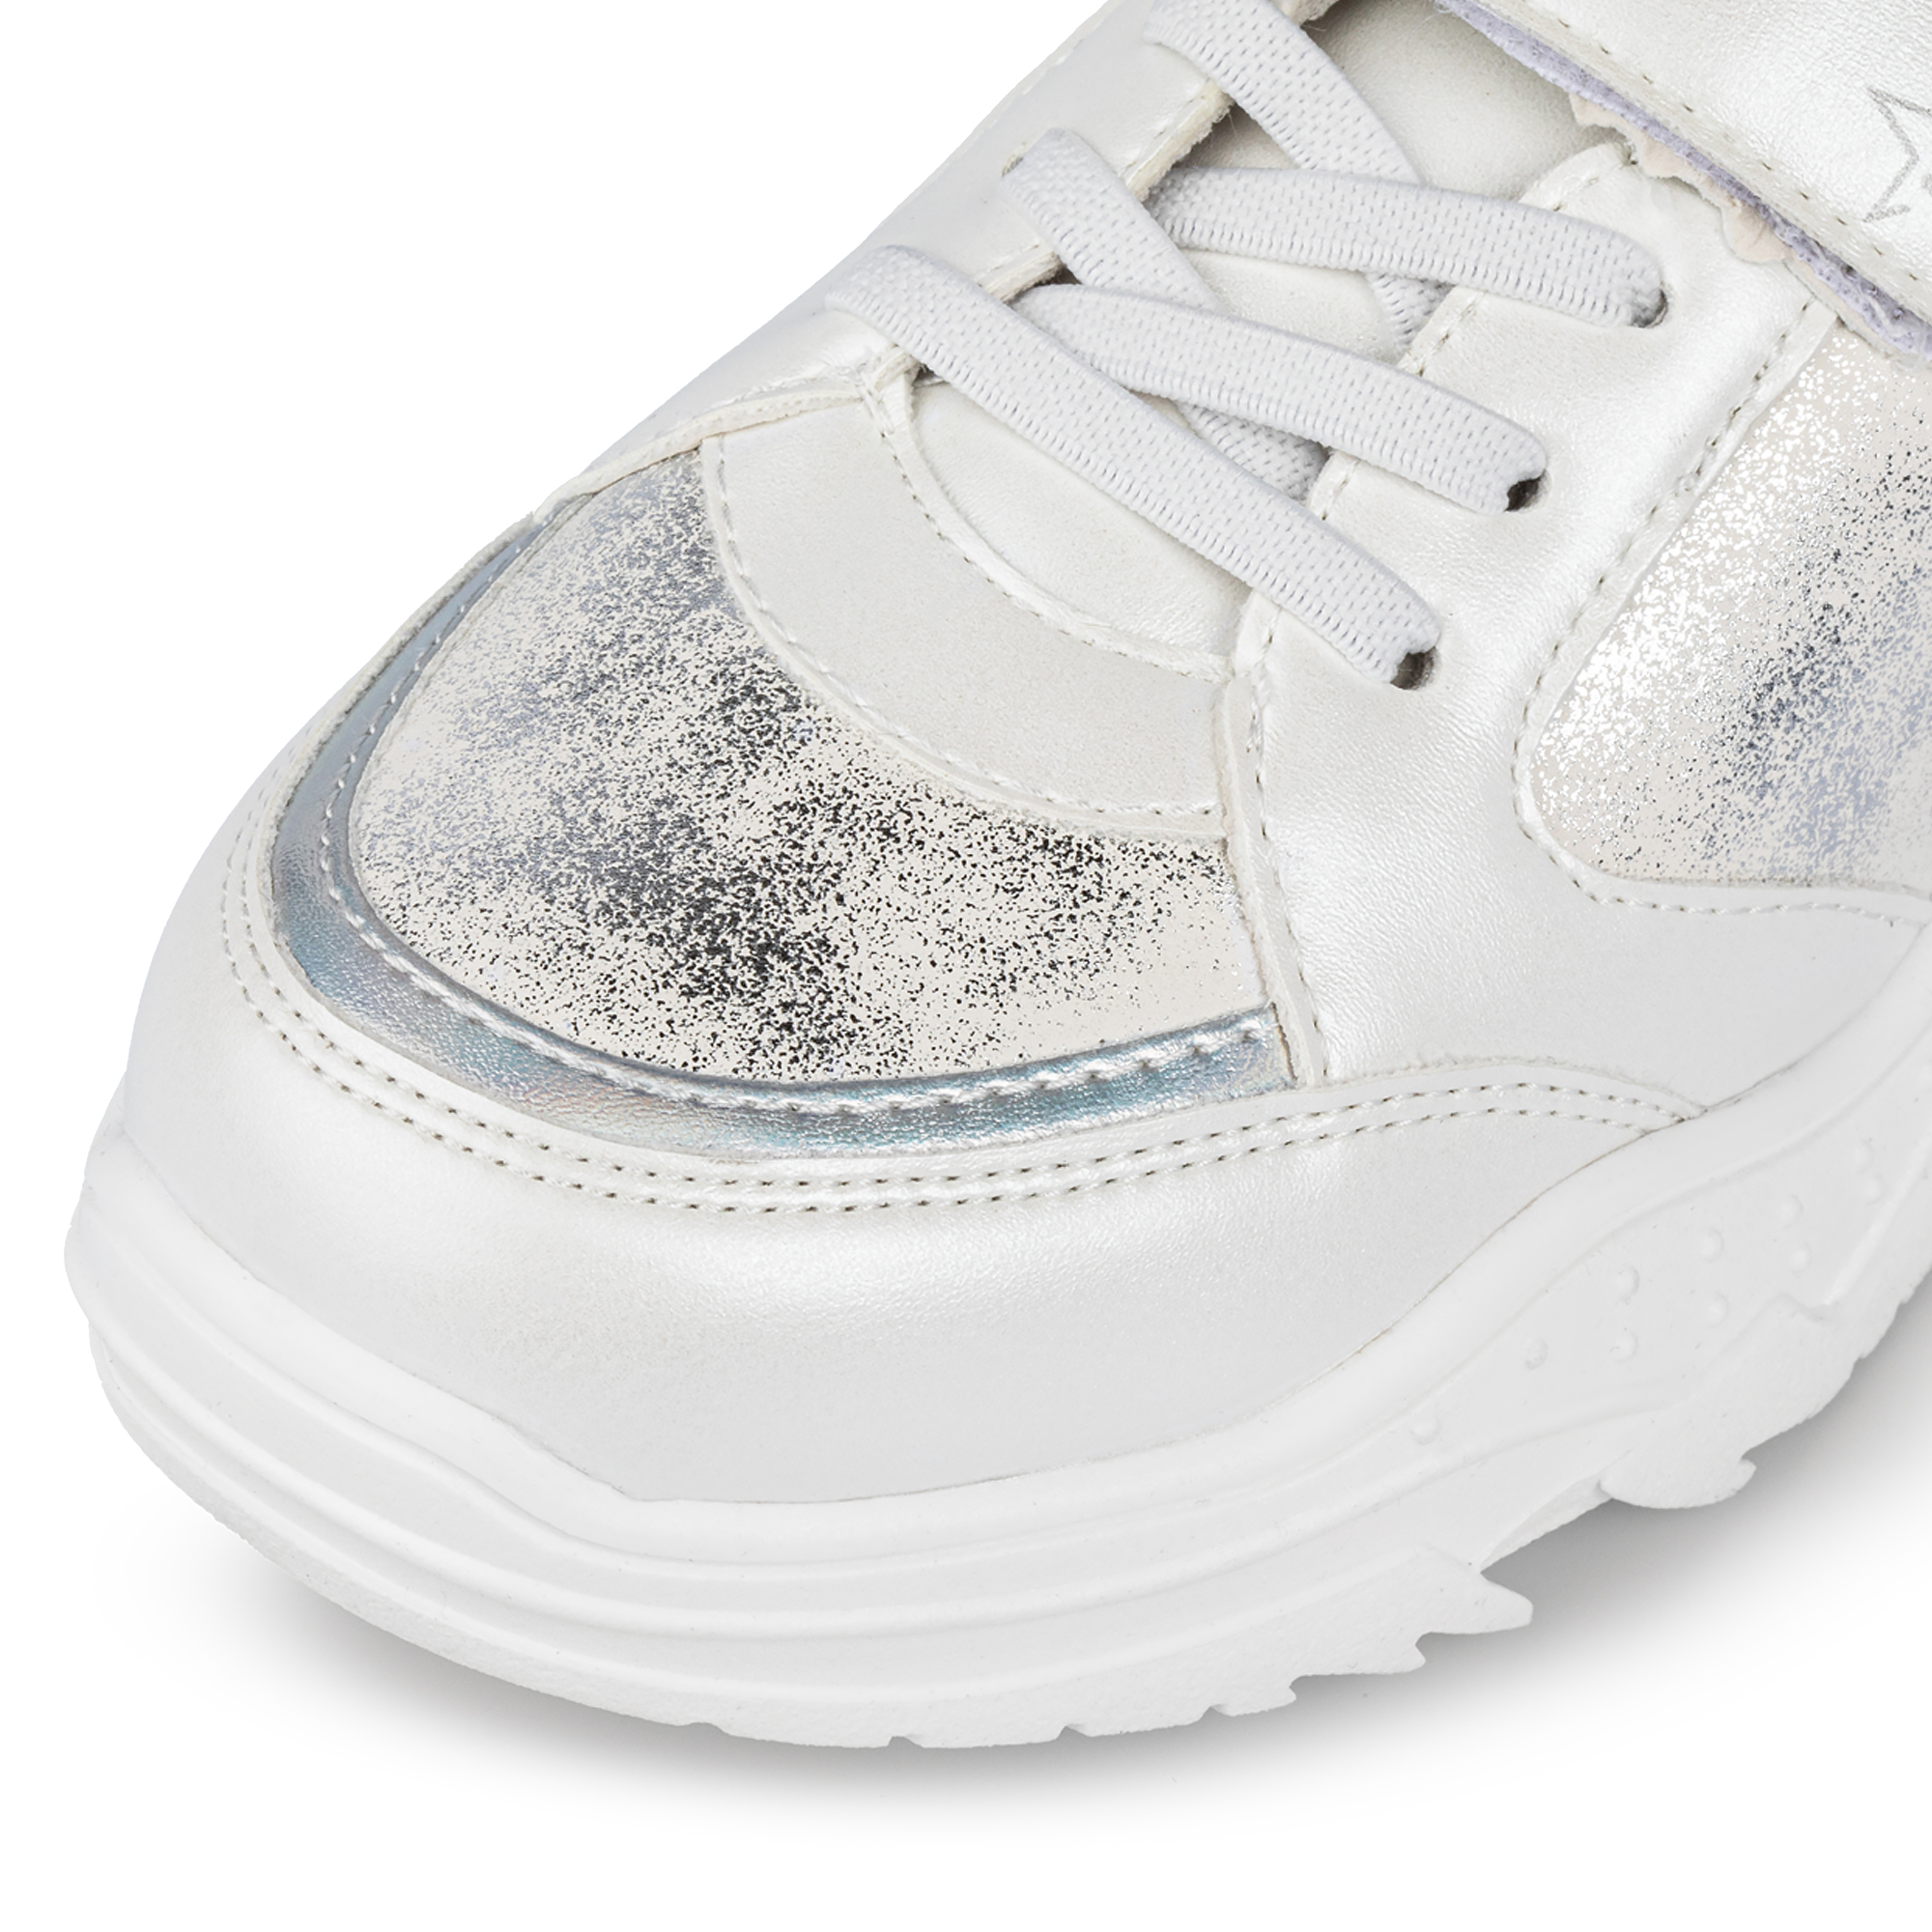 Обувь для девочек MUNZ YOUNG 174-027A-2608, цвет бежевый, размер 35 - фото 6